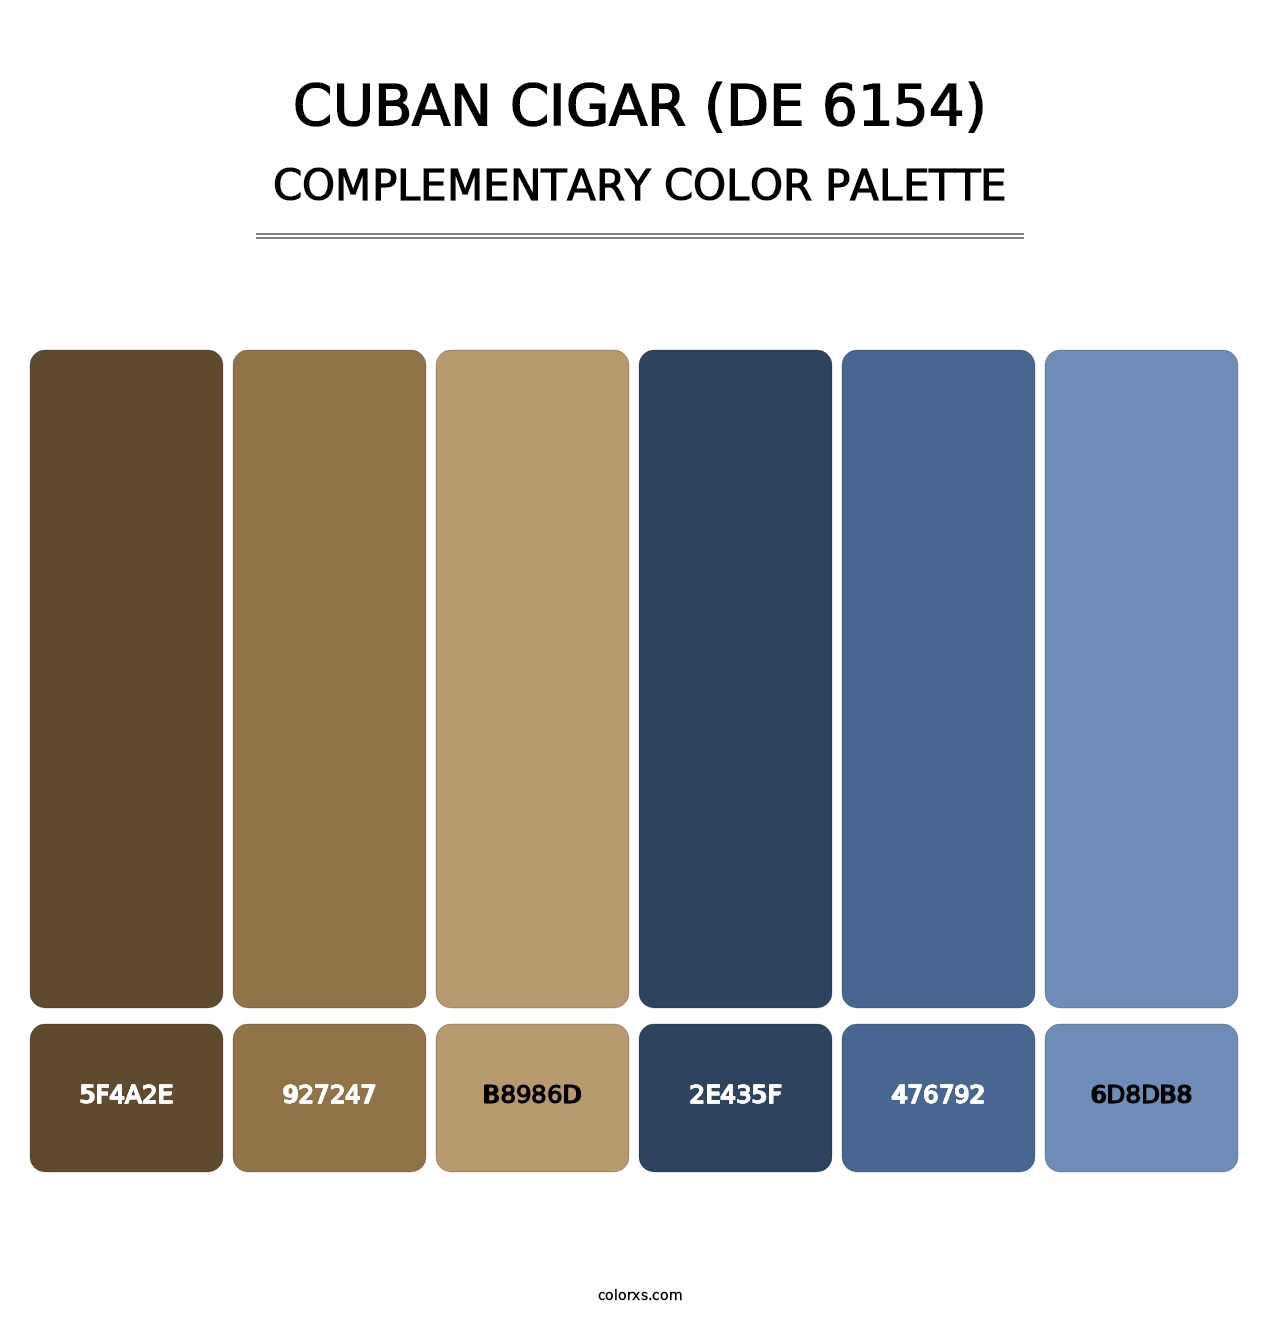 Cuban Cigar (DE 6154) - Complementary Color Palette